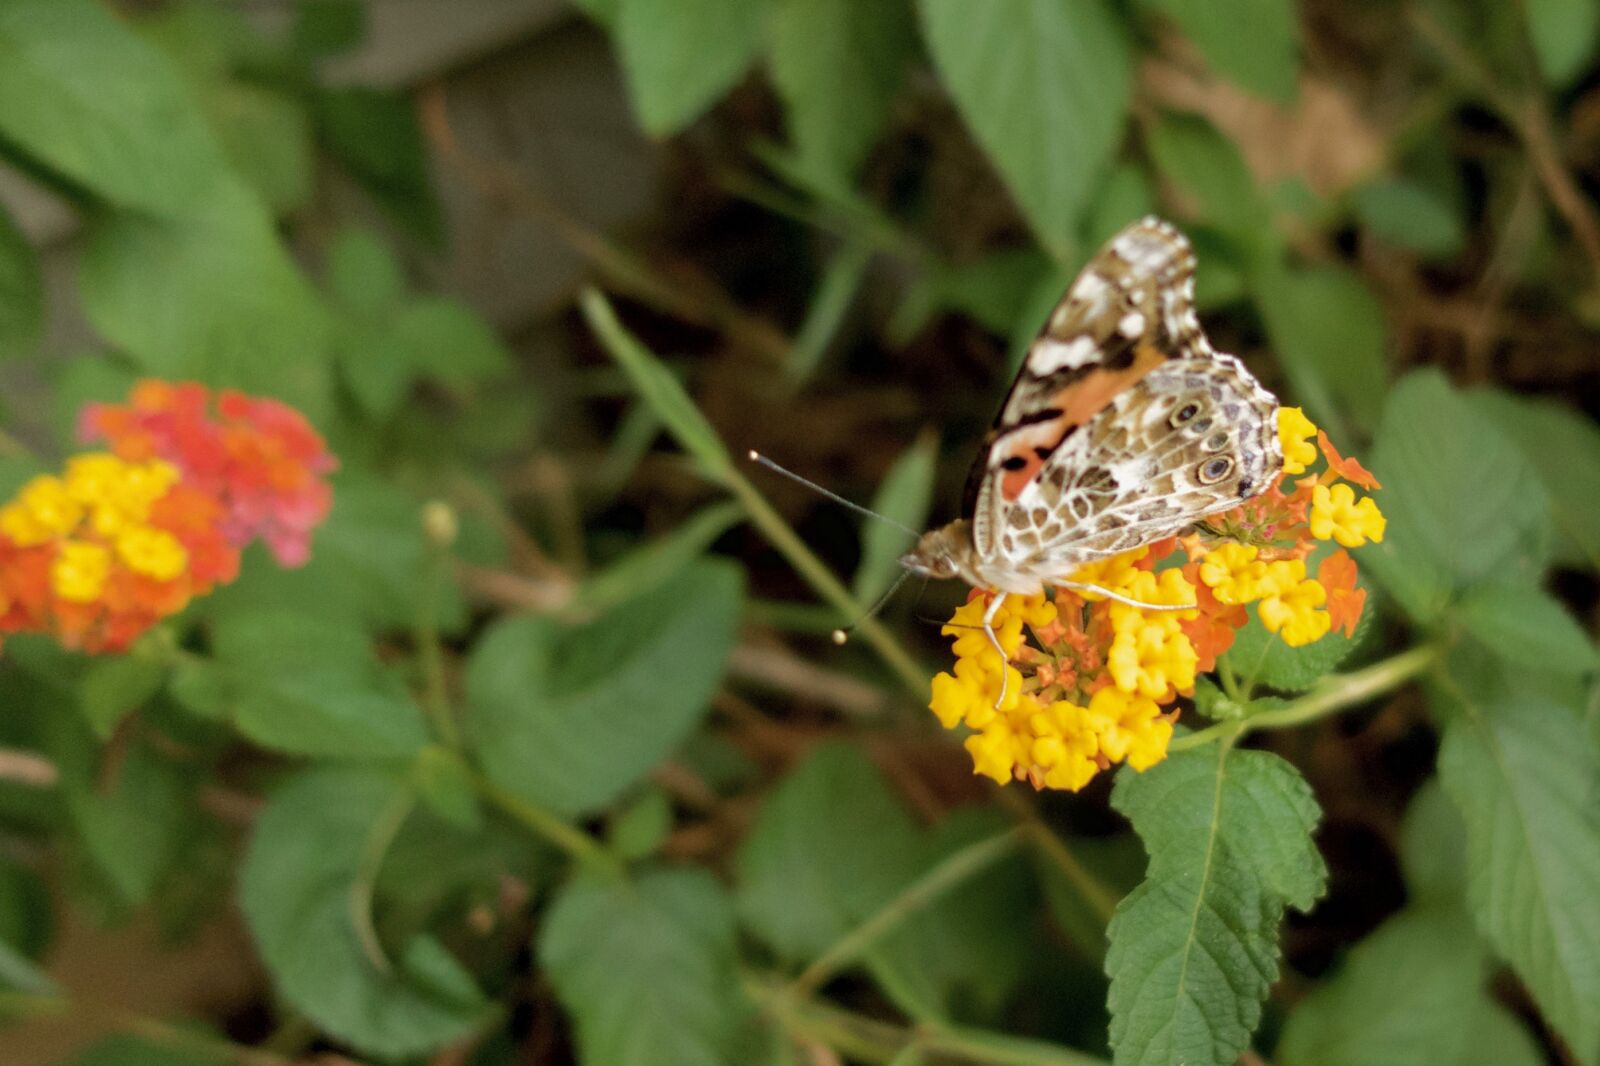 Sony Cyber-shot DSC-RX100 III sample photo. Butterflies, butterfly, flowers photography